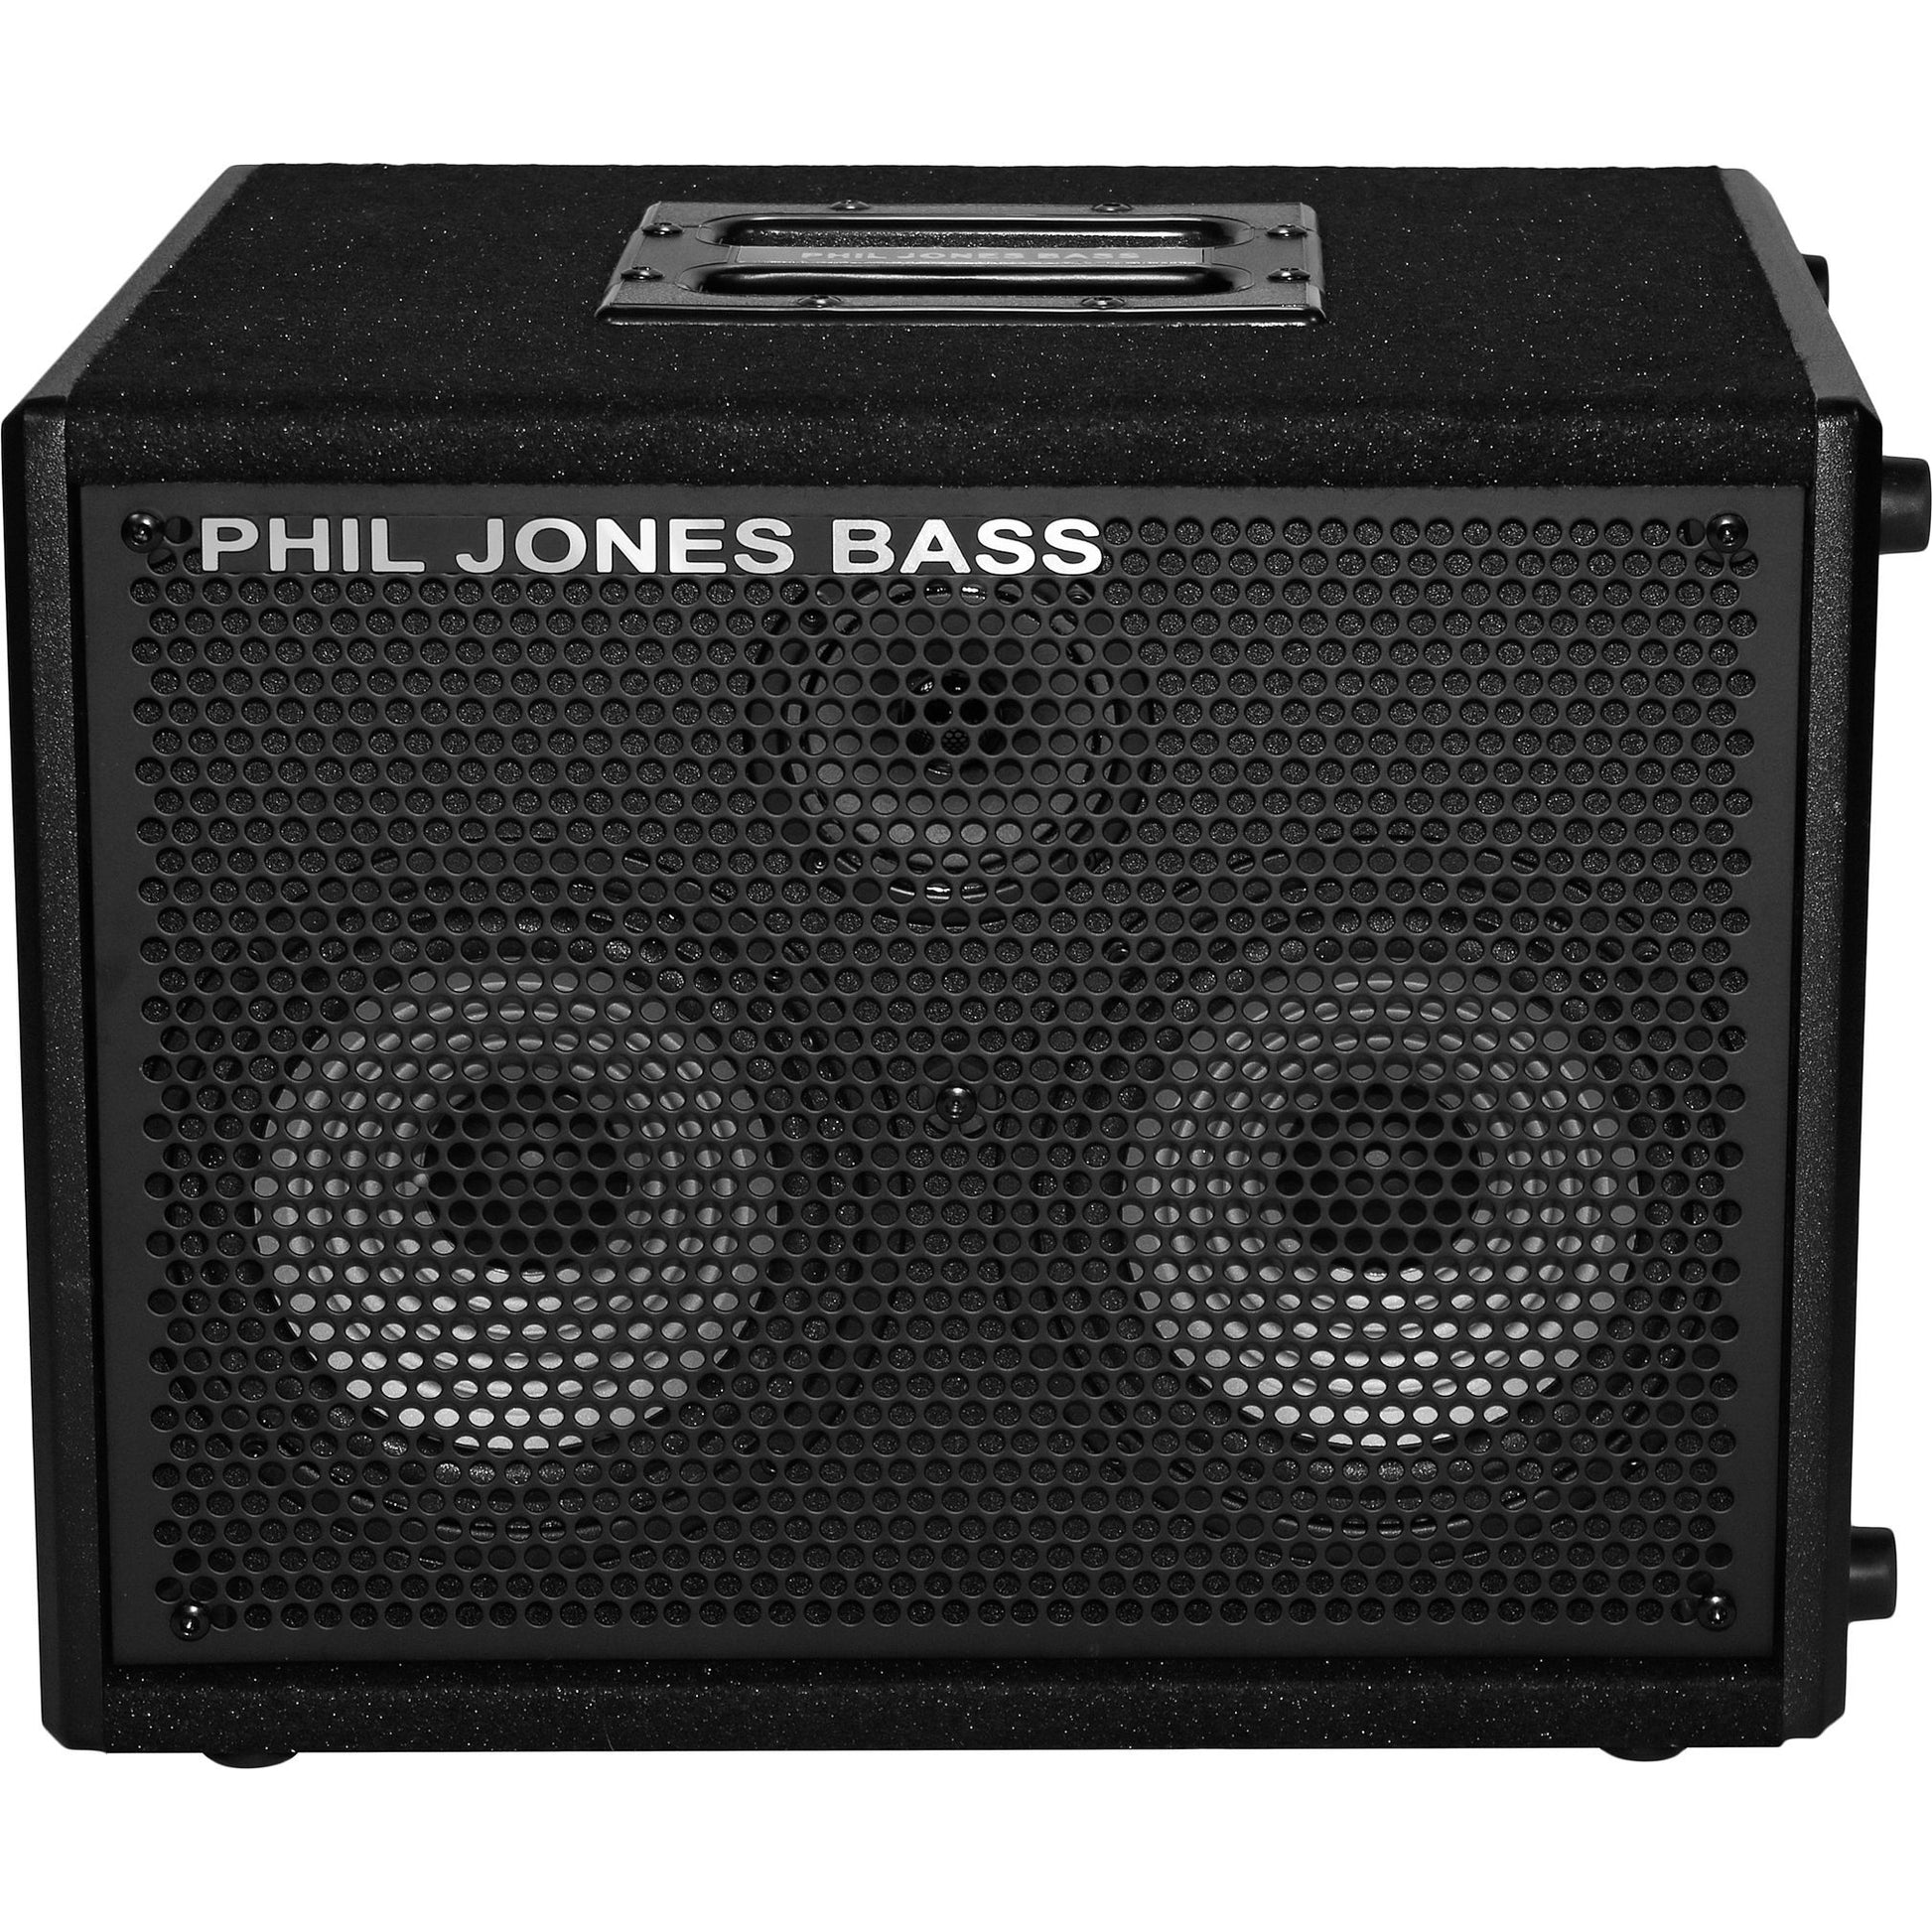 Phil Jones Bass Cab-27 Compact Bass Speaker Cabinet